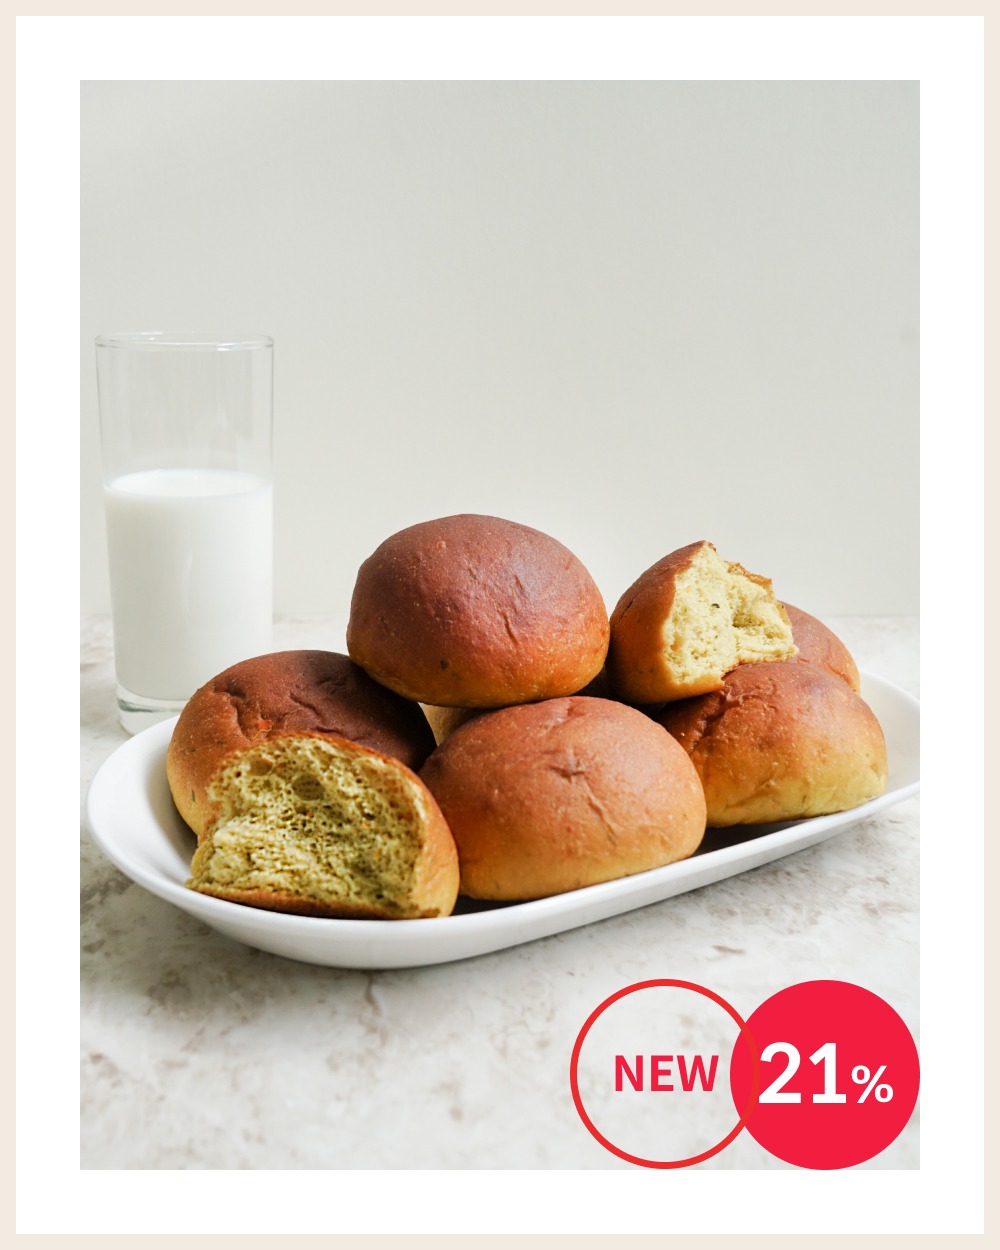 [얼리버드 ~21%] 아침엔 저당안심 야채모닝빵, 35g, 6개입 X 2봉